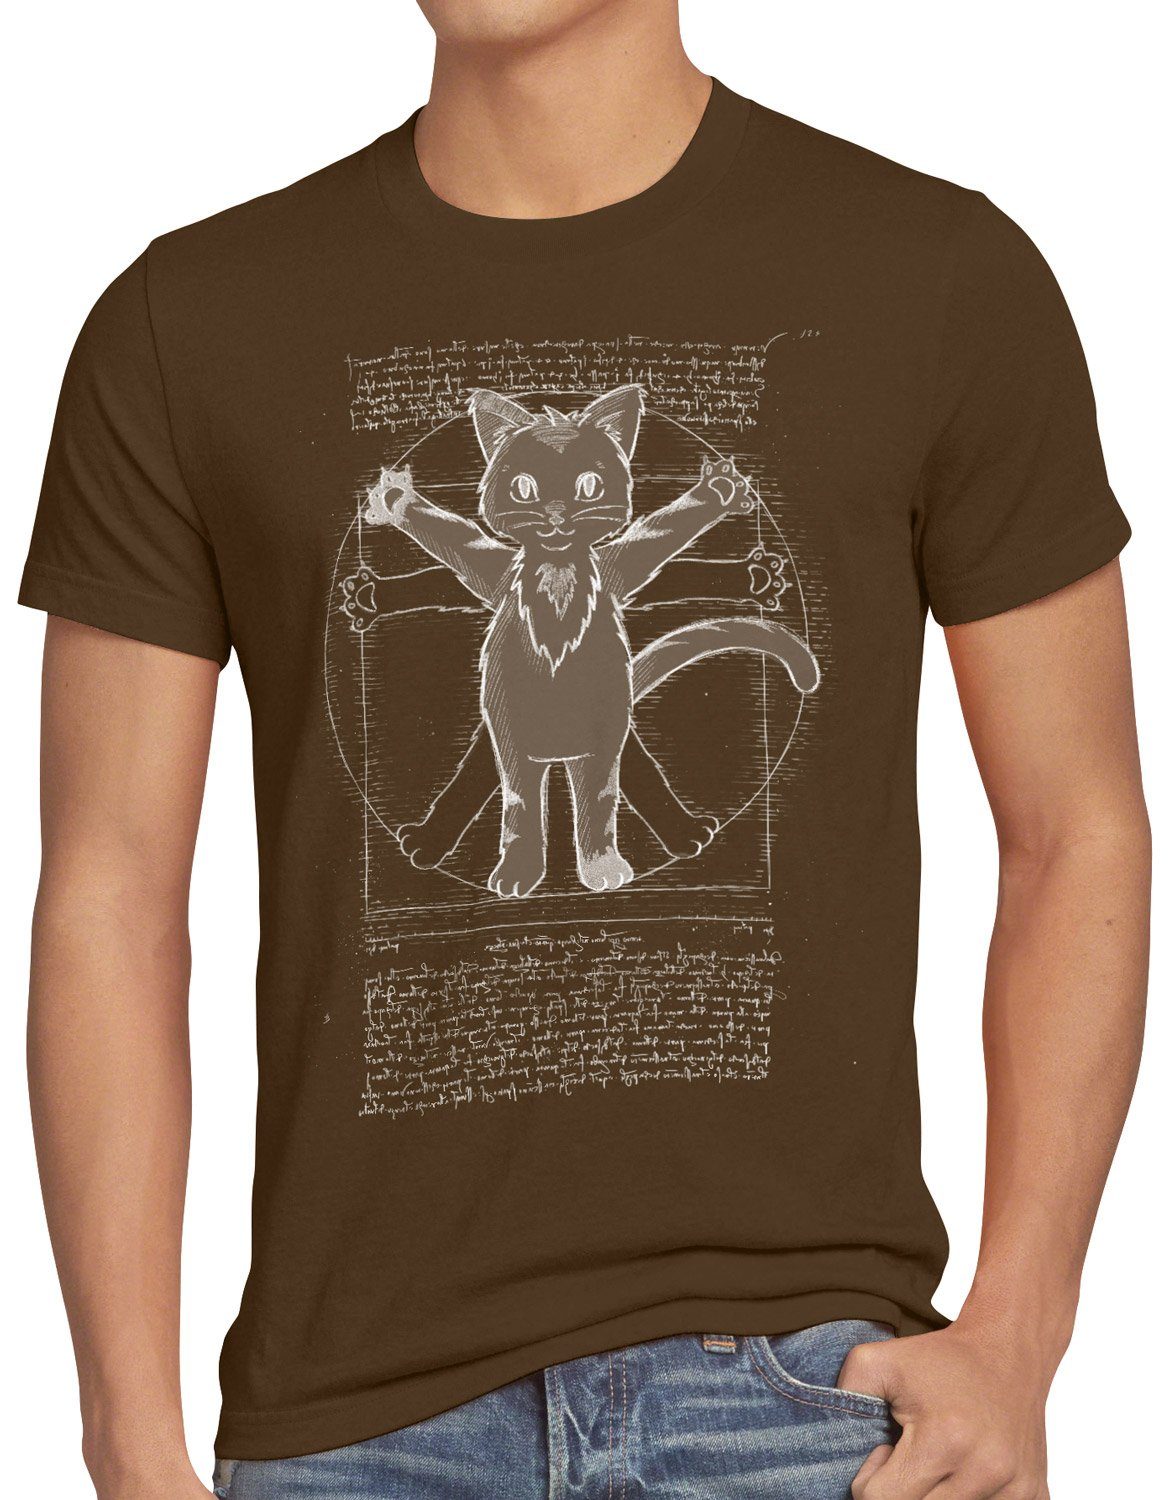 style3 da T-Shirt Vitruvianische braun Katze Herren tier Print-Shirt vinci kätzchen